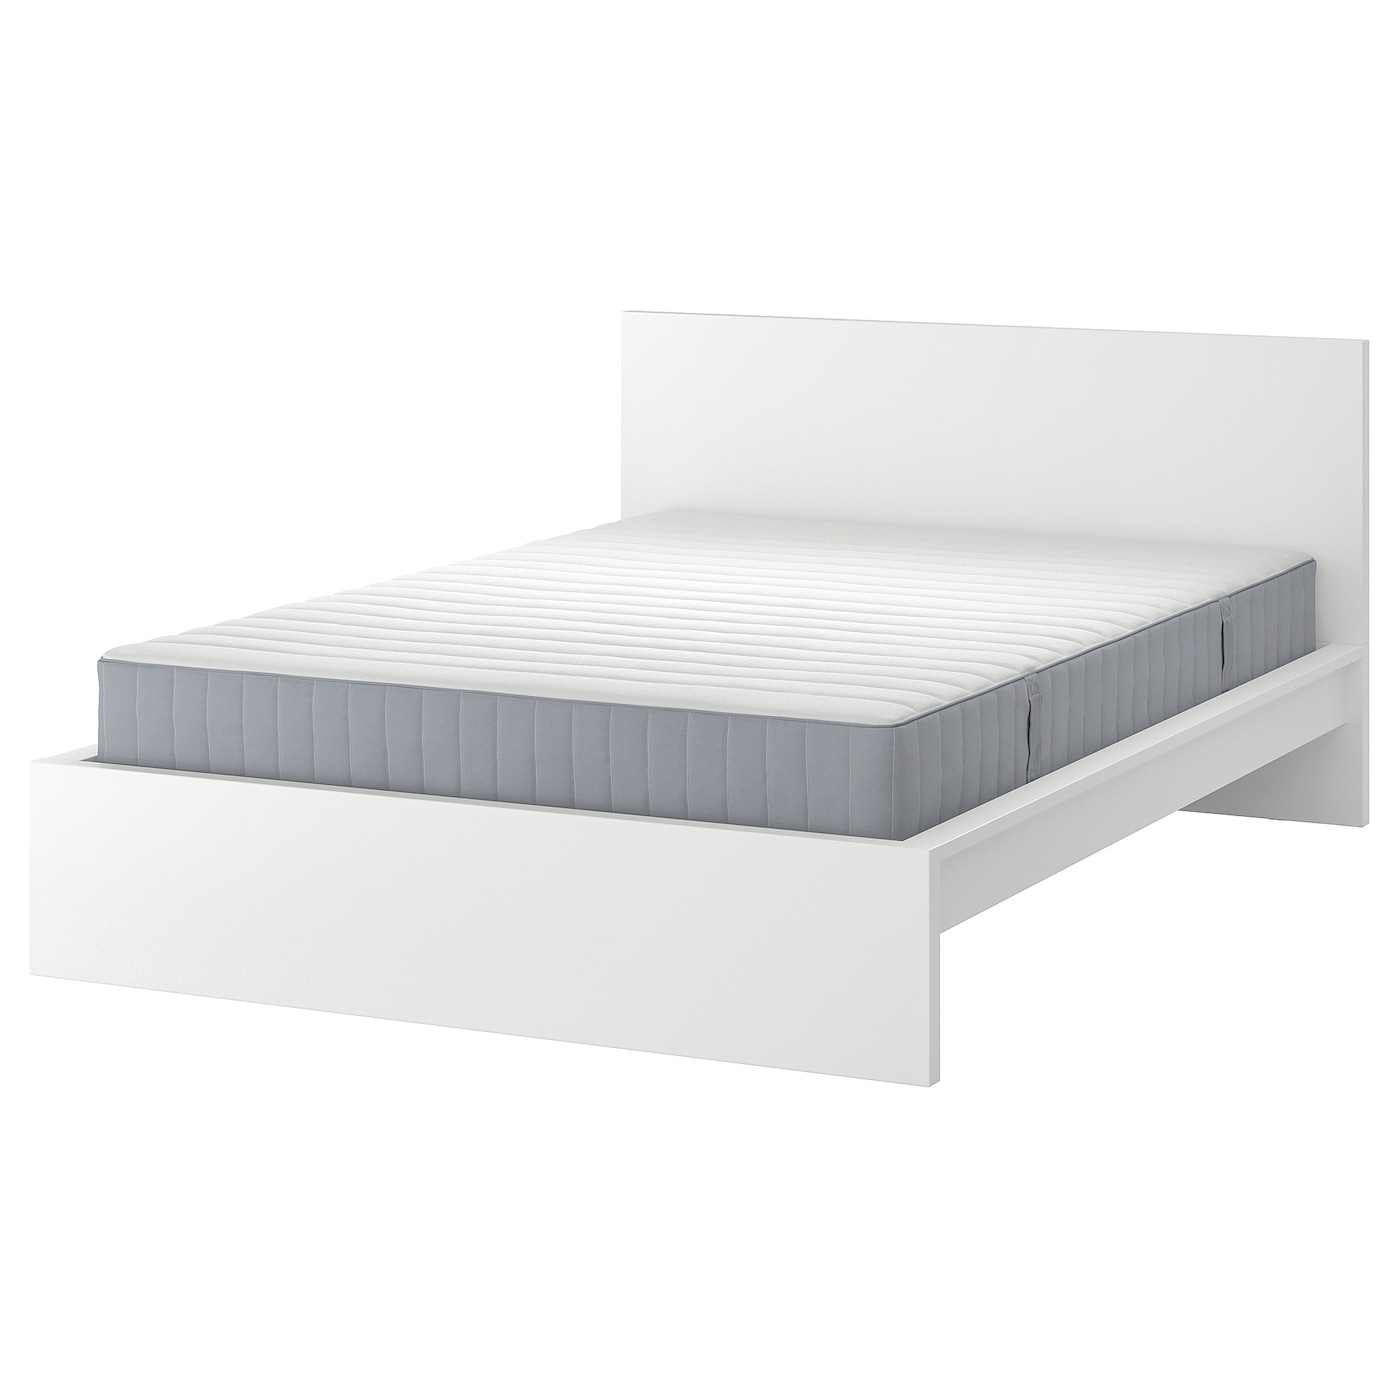 Кровать - IKEA MALM, 200х180 см, жесткий матрас, белый, МАЛЬМ ИКЕА